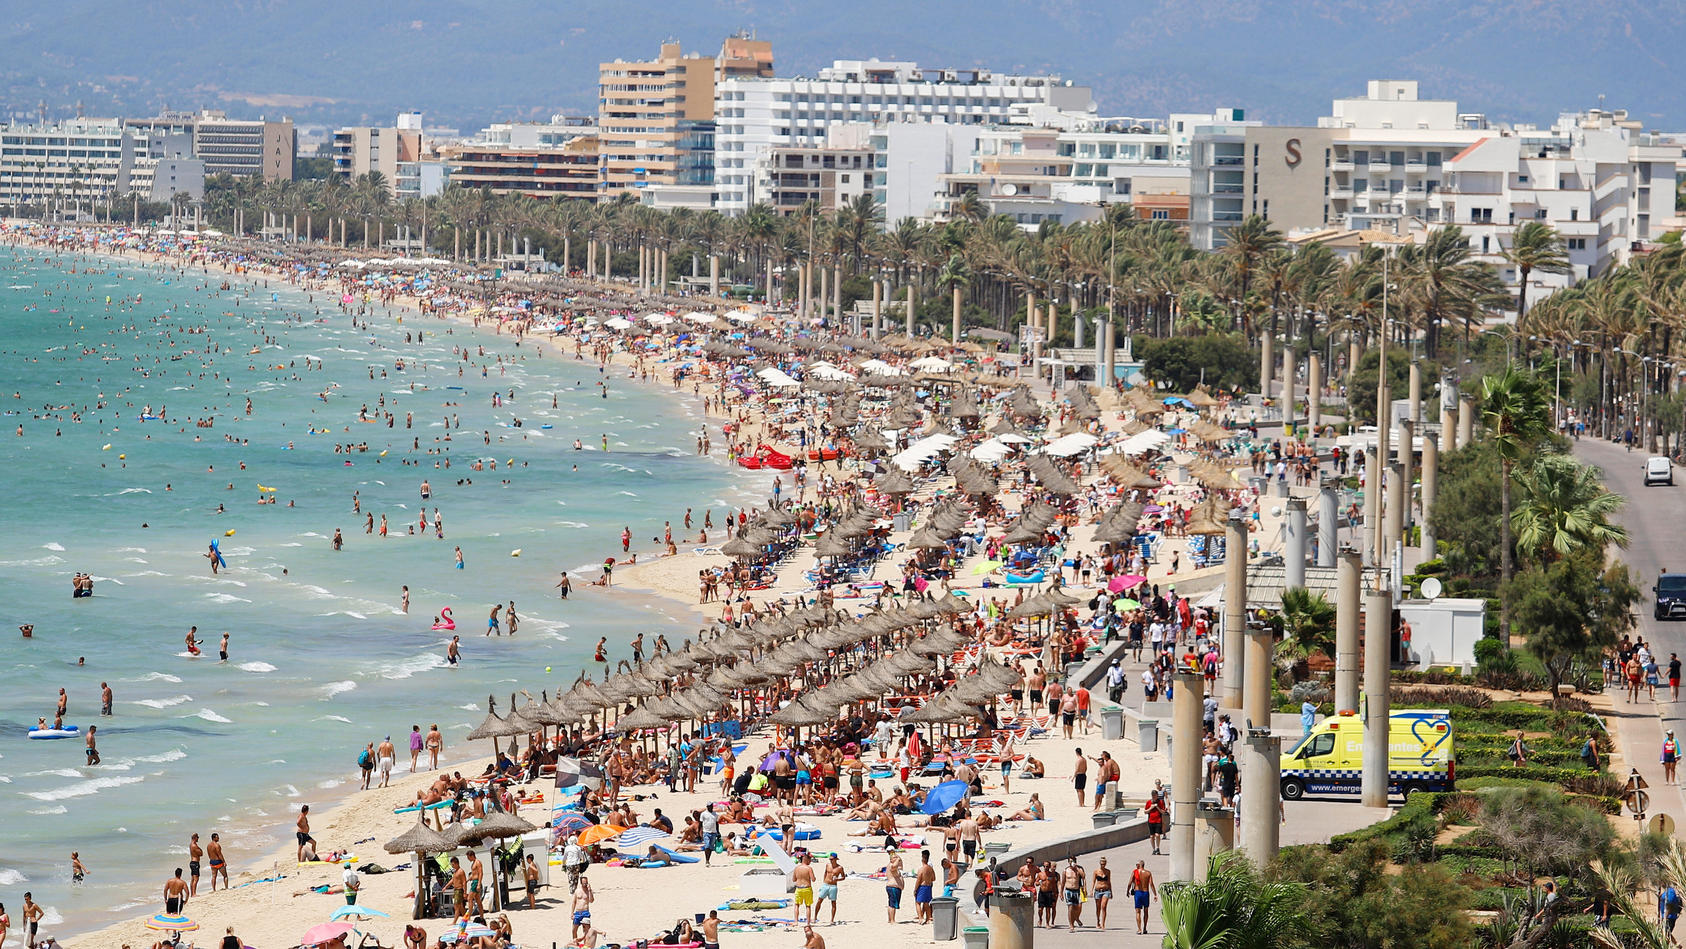 ARCHIV - 12.08.2018, Spanien, Palma: Hotels stehen am Strand von El Arenal, an dem zahlreiche Touristen die Sonne genießen. Mit Schnäppchenpreisen und Rabatten von bis zu 50 Prozent werben Veranstalter um Kurzentschlossene. (zu dpa: "Gute Zeiten für 